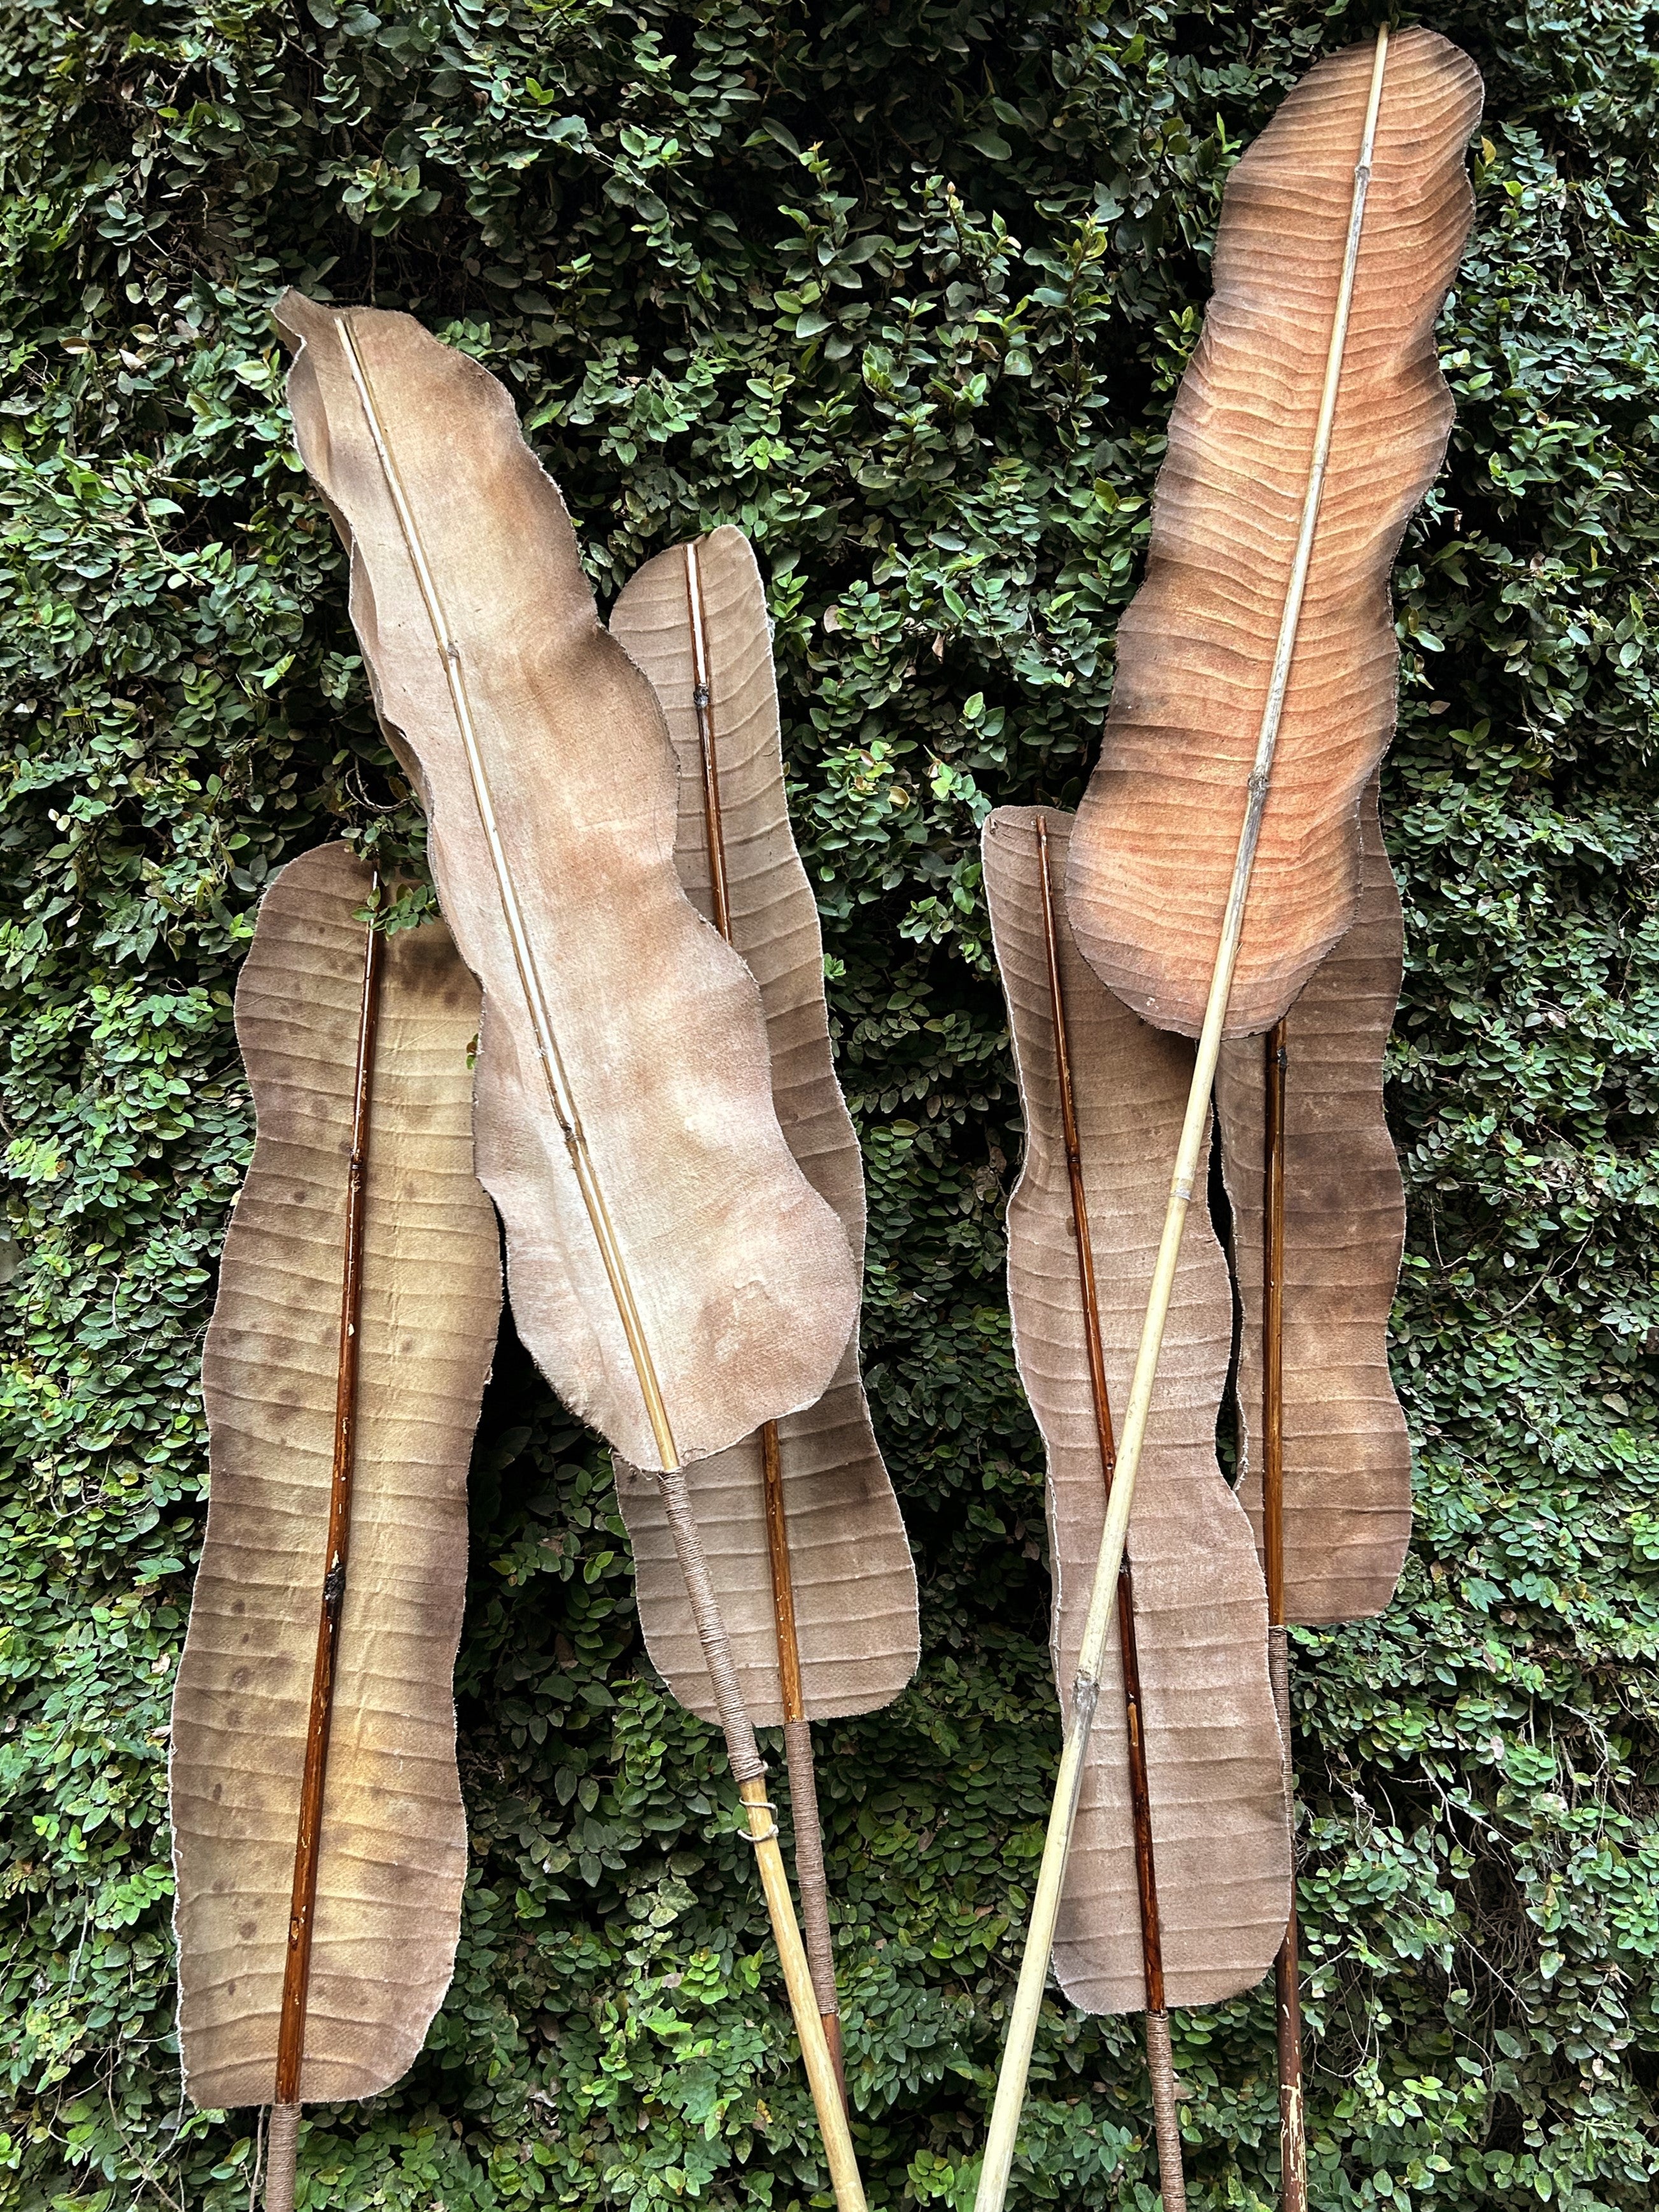 Banana leaf